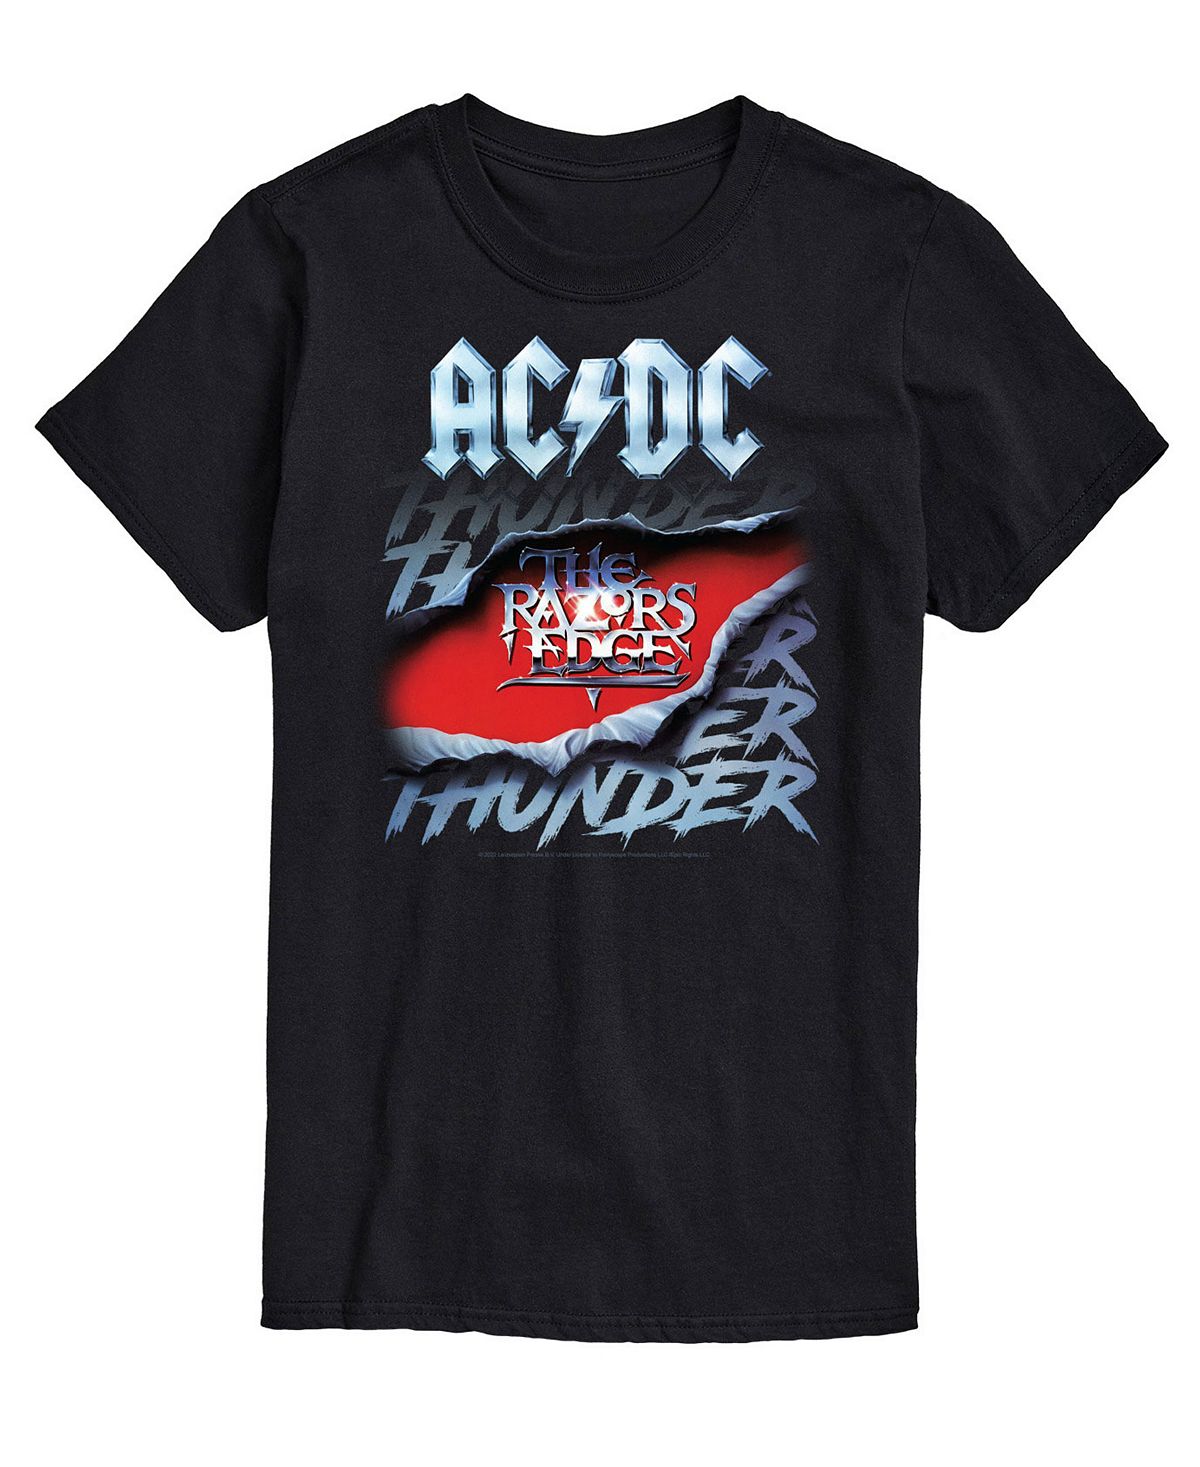 Мужская футболка acdc thunder AIRWAVES, черный